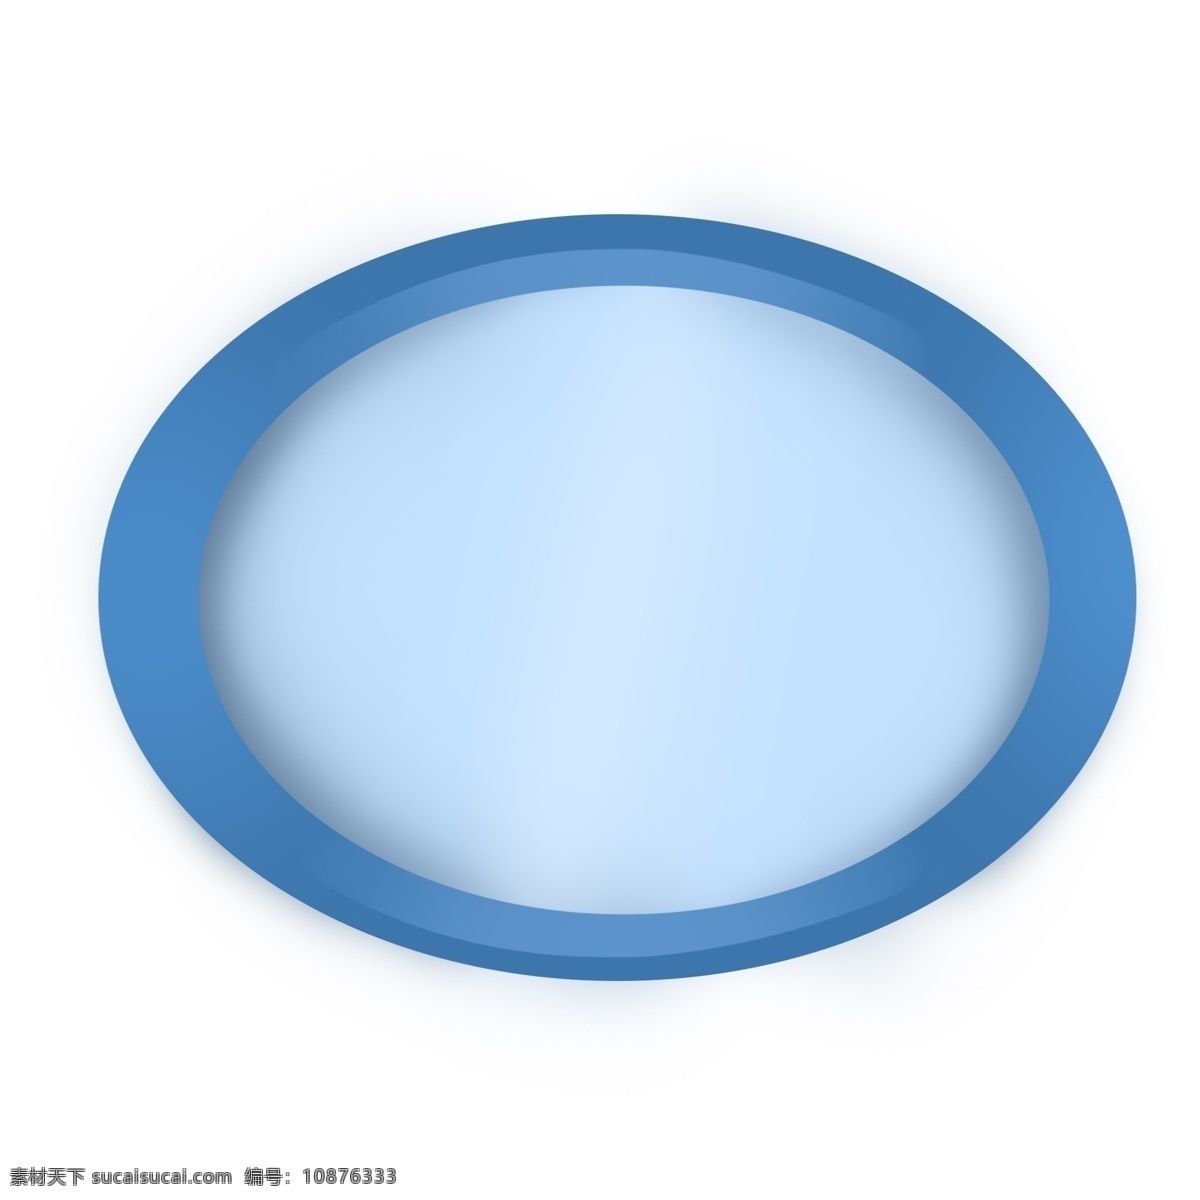 蓝色 椭圆形 凹槽 立体 标题 框 标题框 蓝色标题框 圆形 环形 可爱 简约 清新 标签 文字框